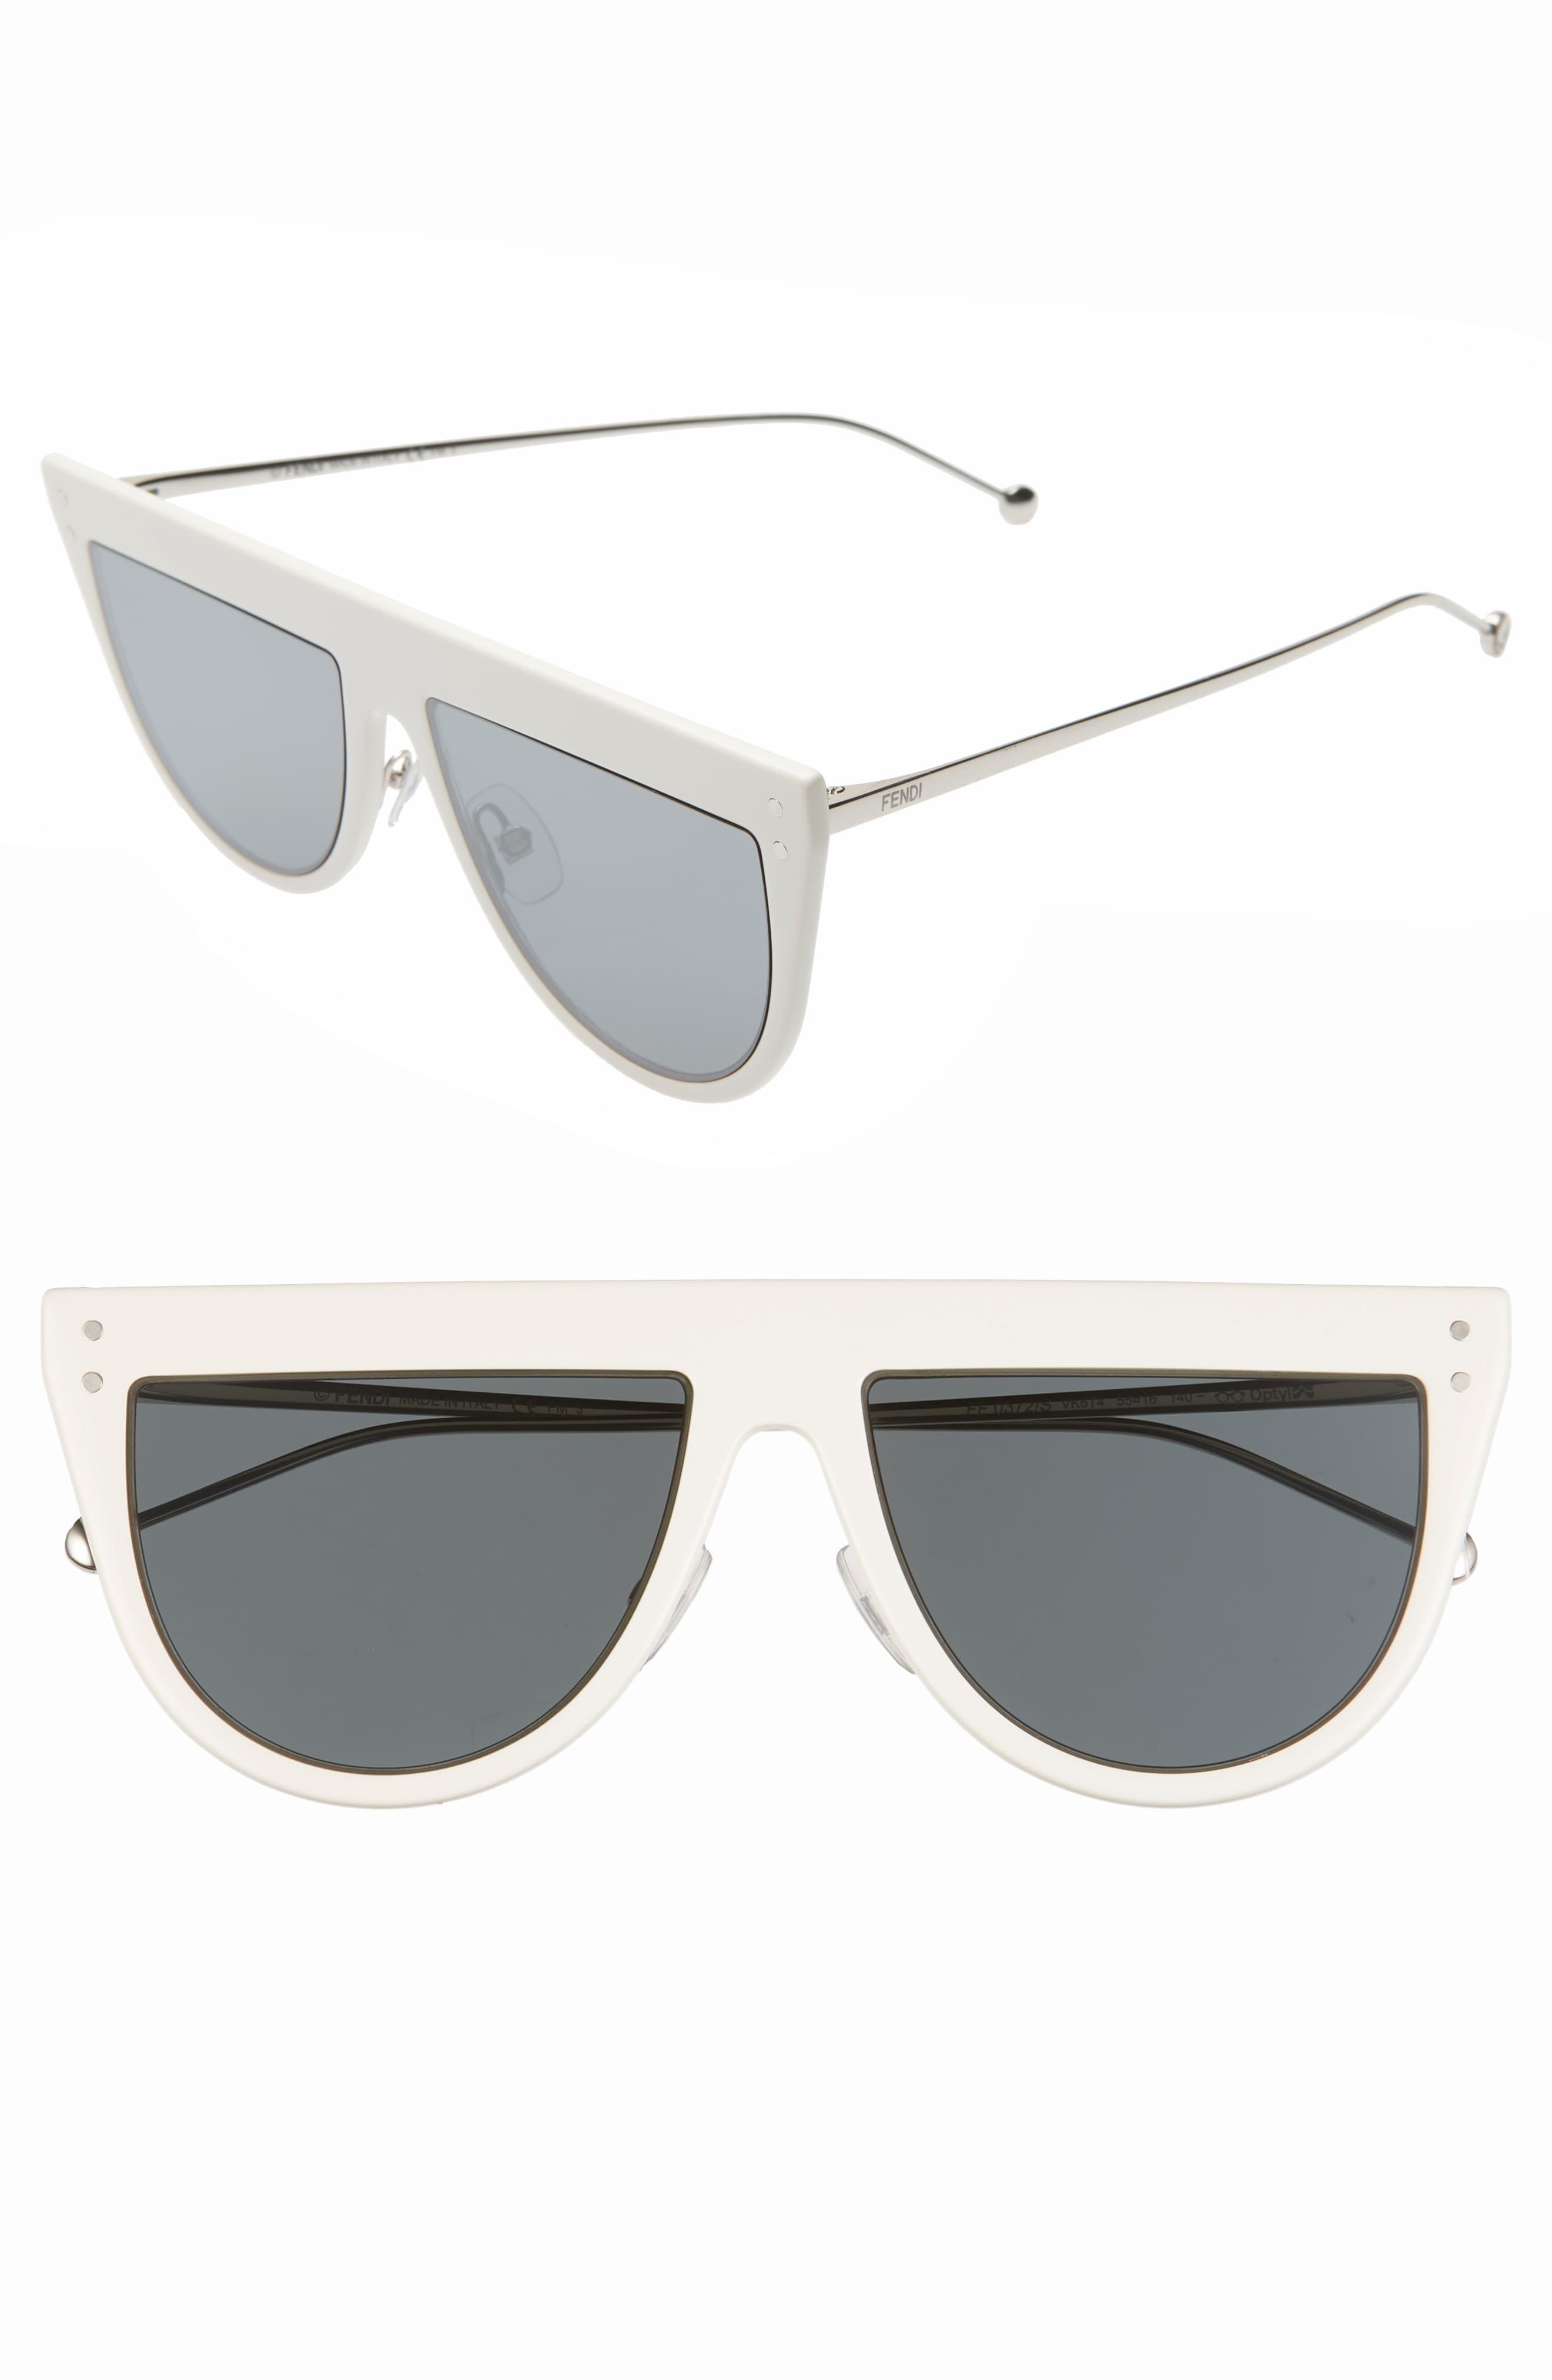 fendi flat top sunglasses